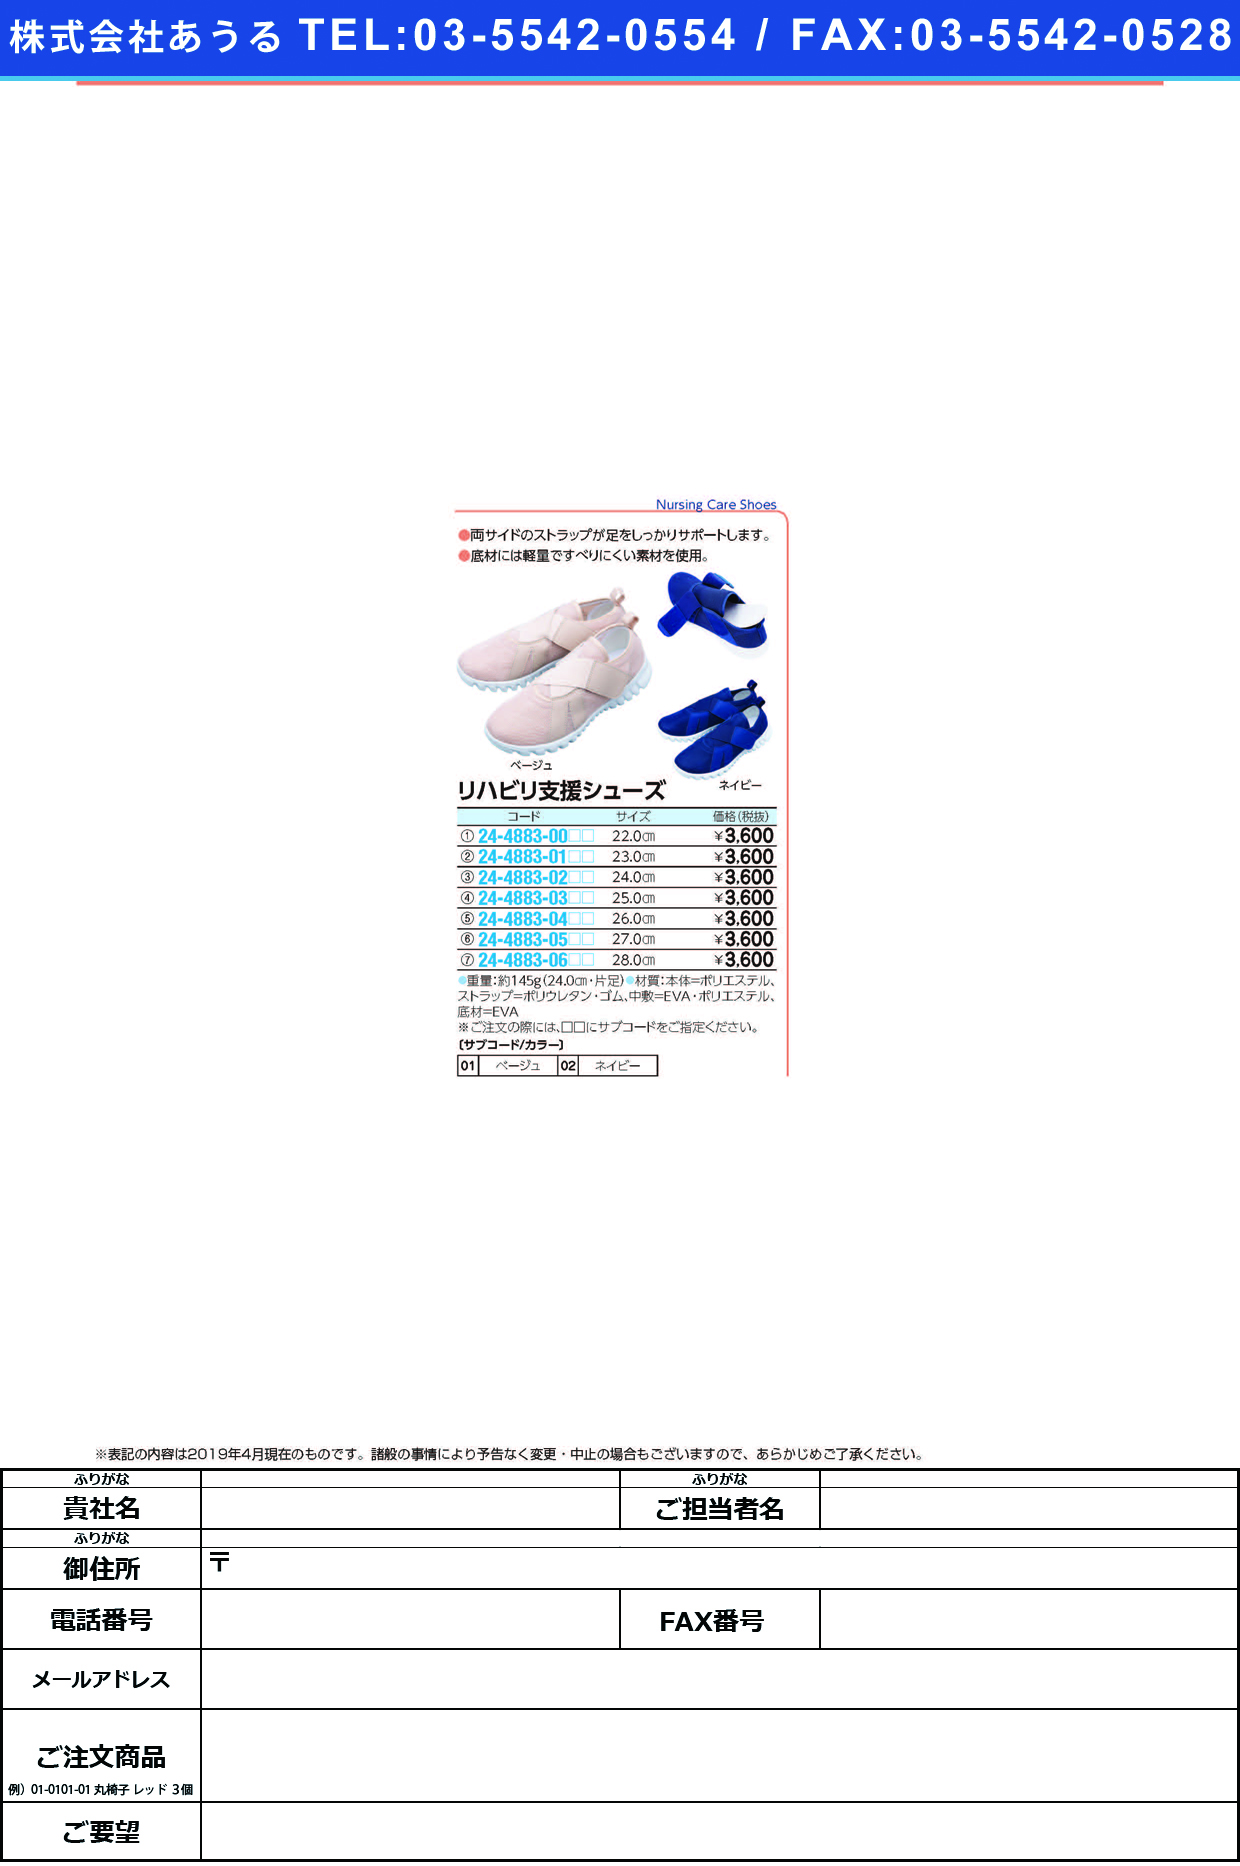 (24-4883-02)リハビリ支援シューズ 24.0CM ﾘﾊﾋﾞﾘｼｴﾝｼｭｰｽﾞ ネイビー【1足単位】【2019年カタログ商品】